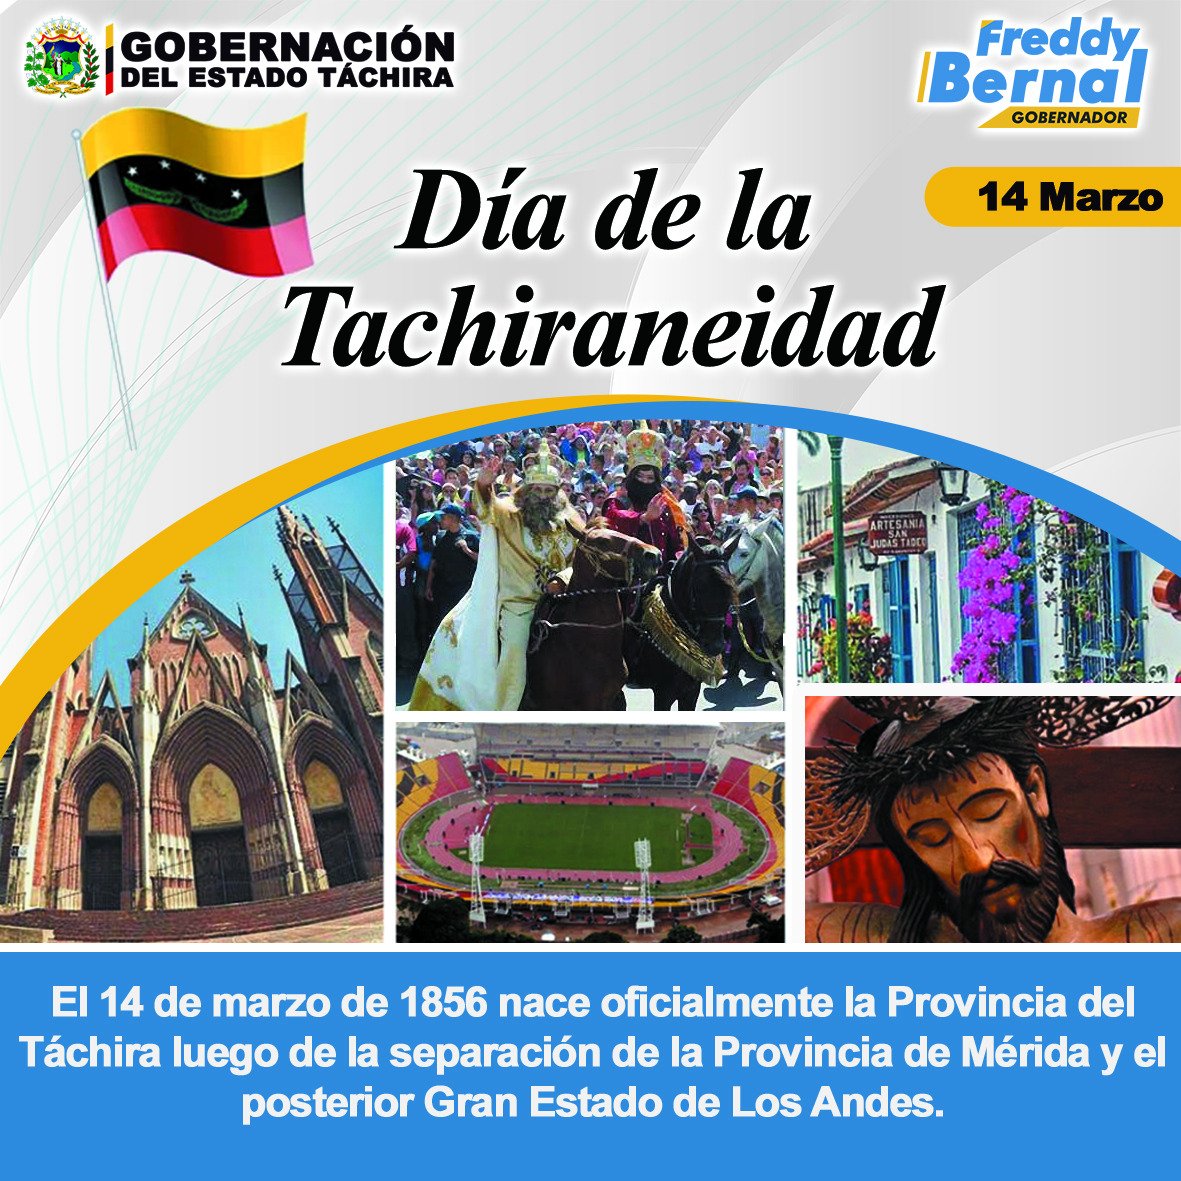 ¡Feliz día! Hoy 167 años de creación de nuestra provincia del #Tachira Felicidades a todos los hombres y mujeres de nuestra tierra Andina.